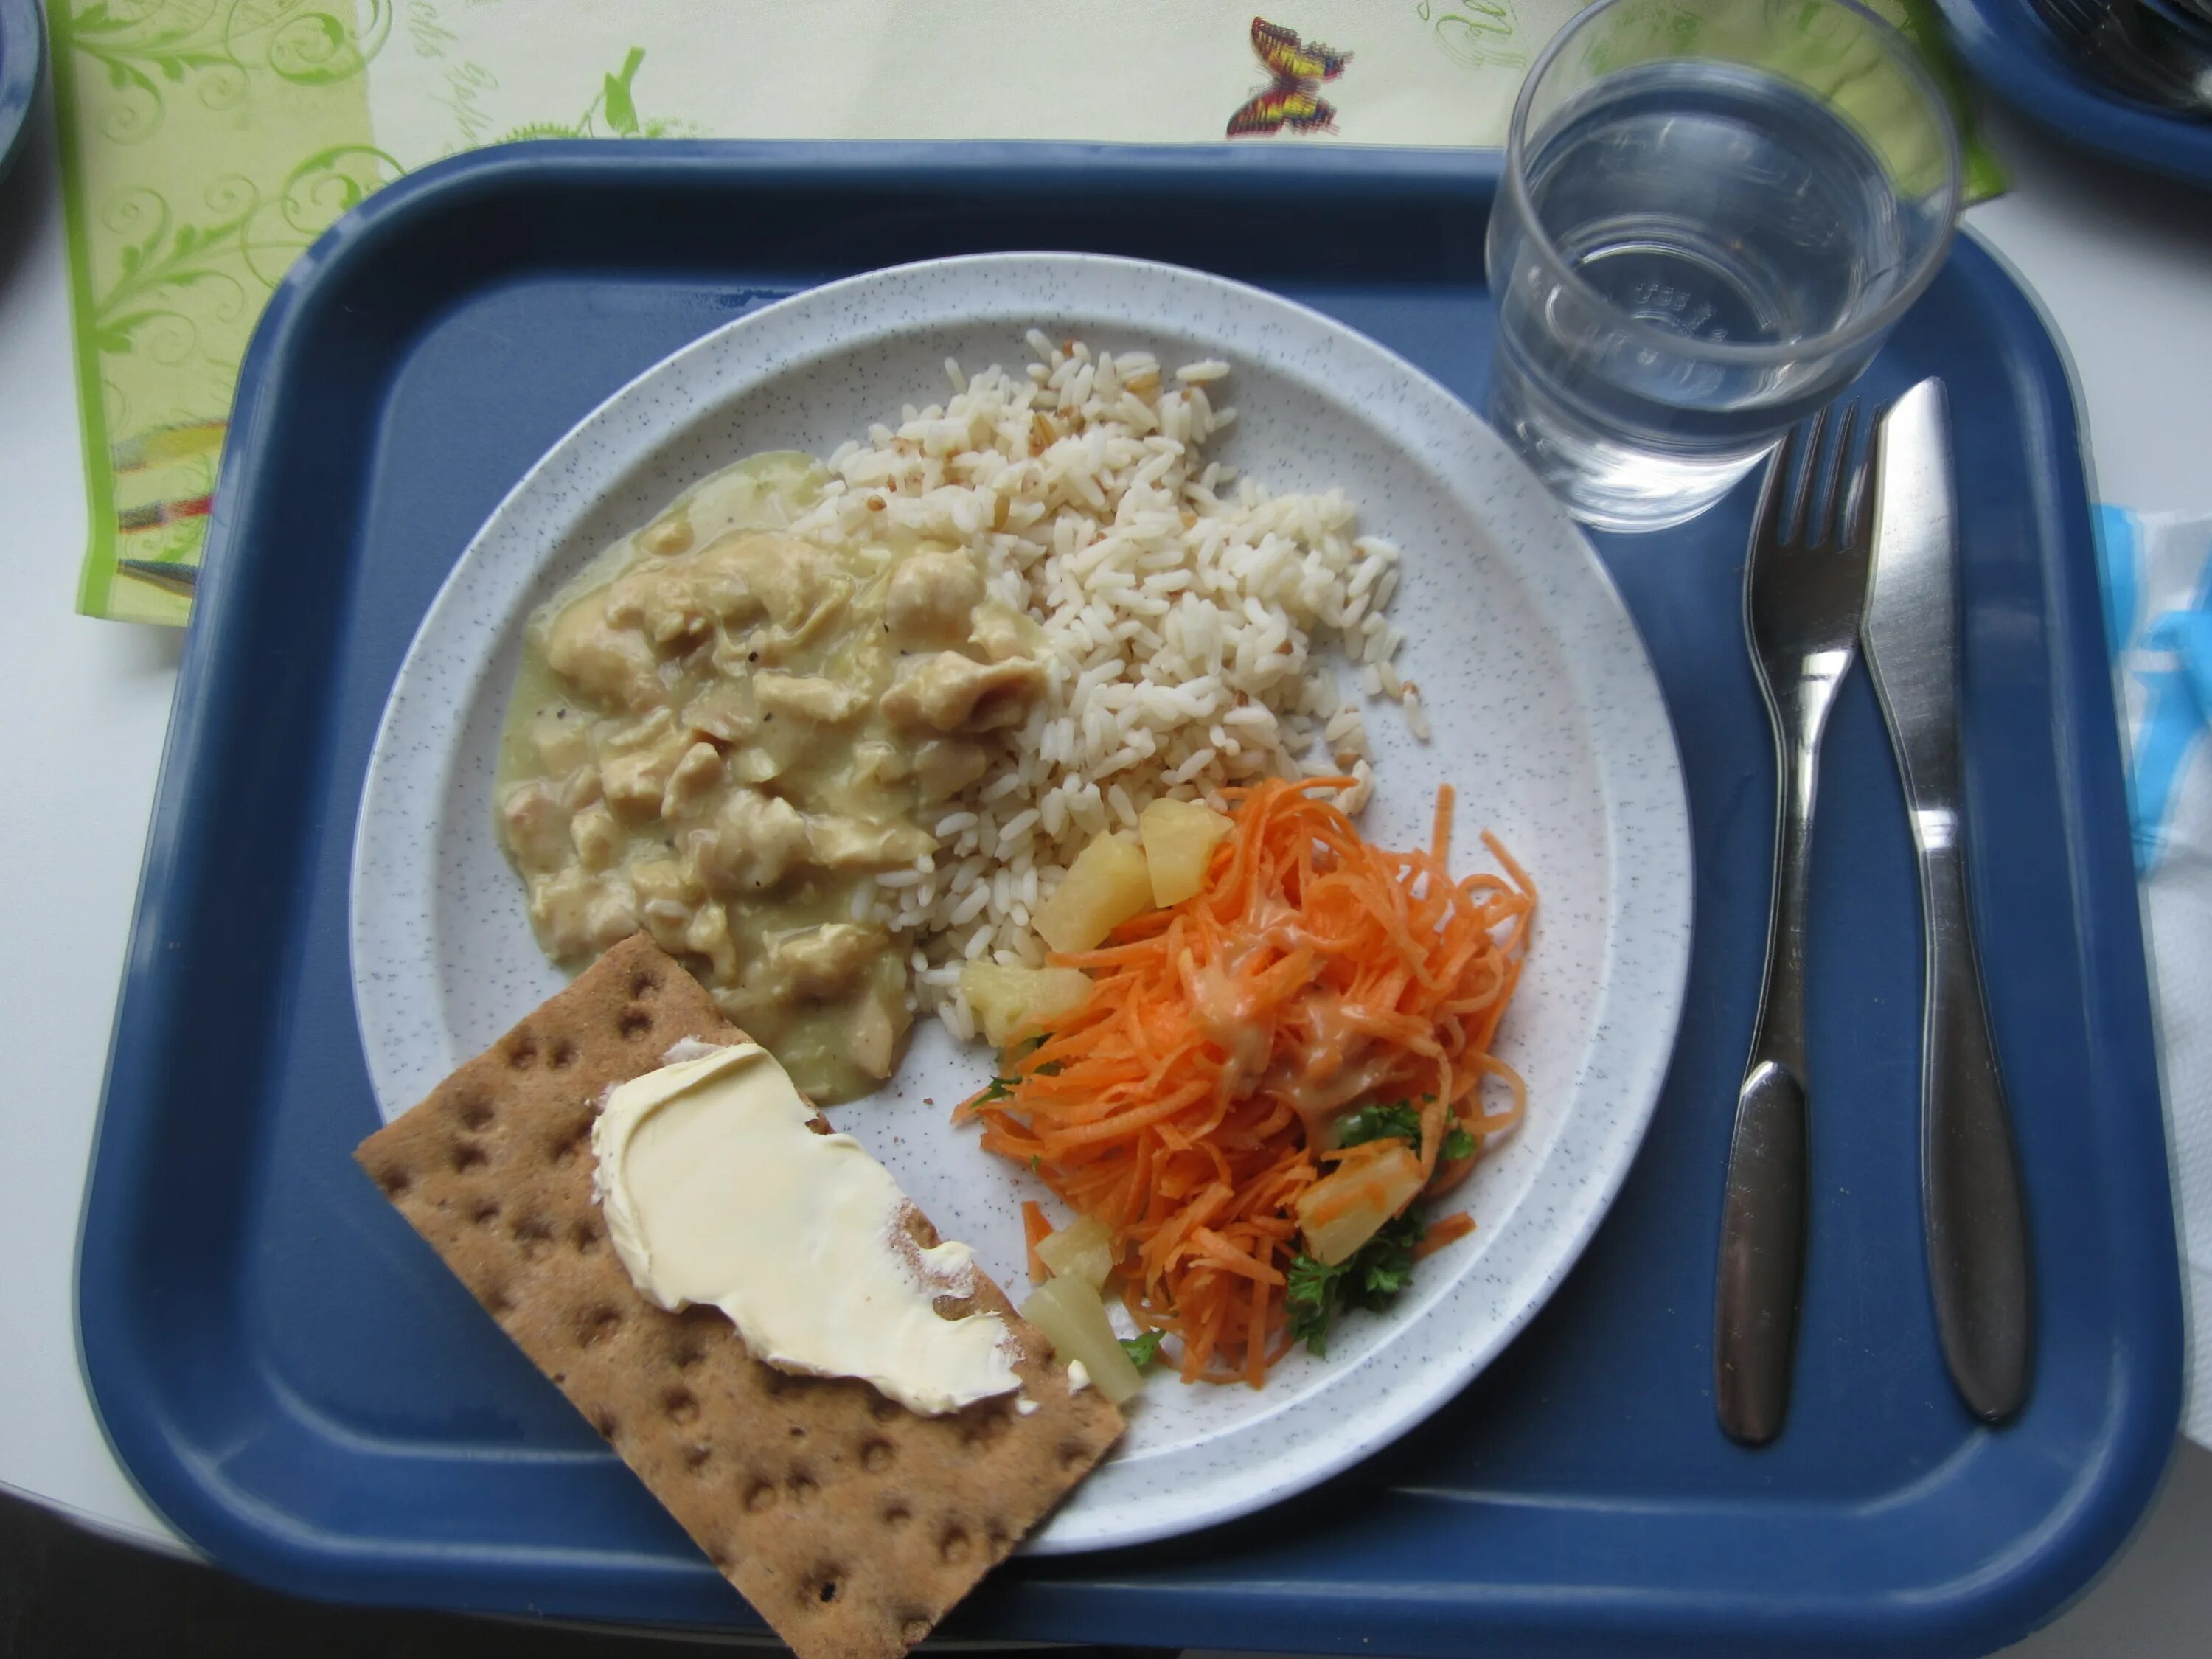 Обеды завтраки в школе. Школьный обед. Школьный обед в Финляндии. Школьный завтрак. Школьная еда в Финляндии.